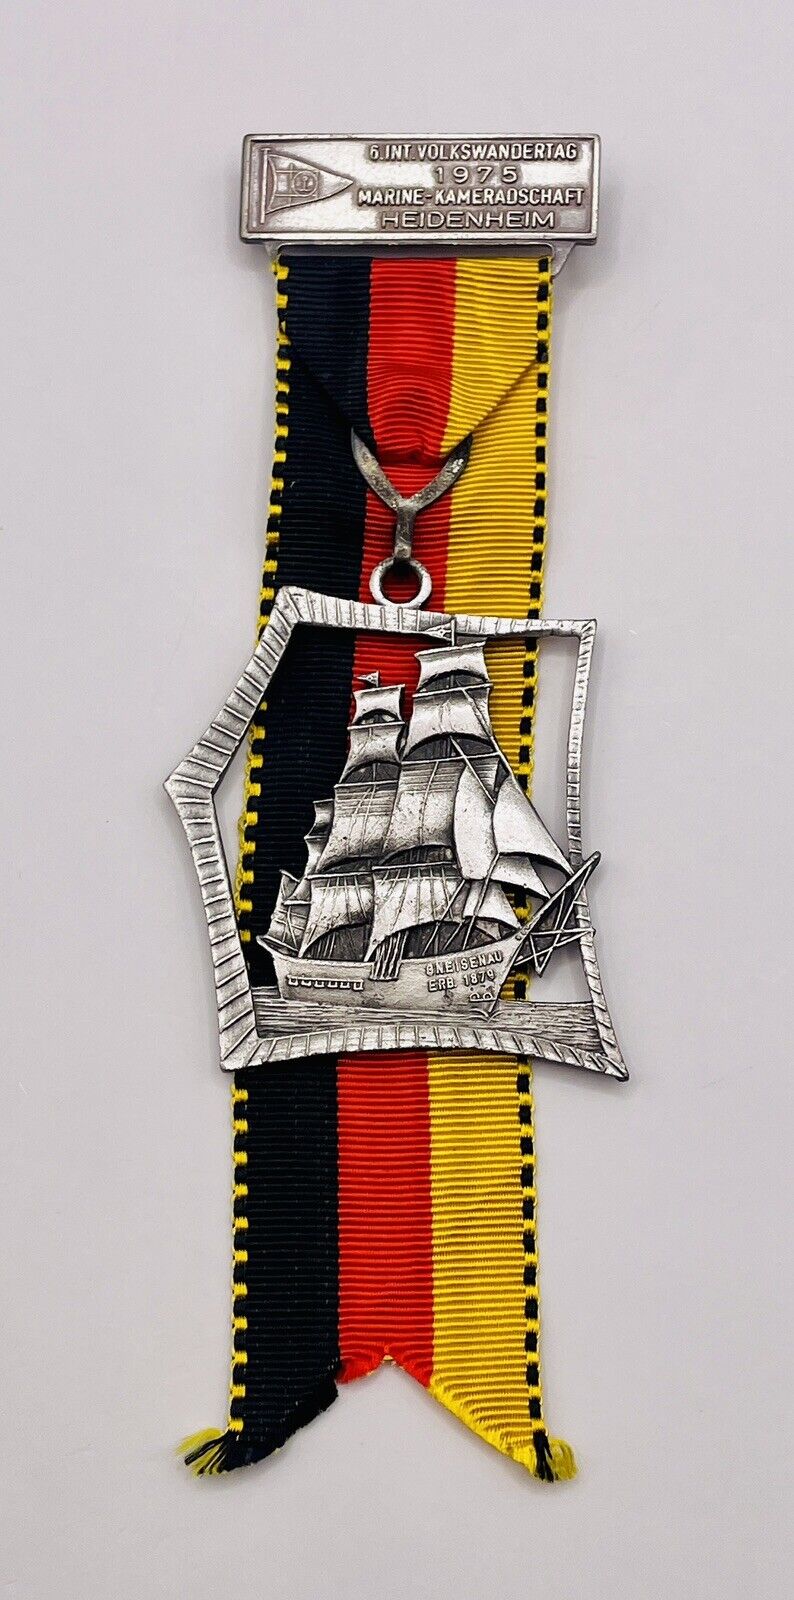 1975 German Hiking Medal 6 Int Volkswandertag Marine Kameradschaft Heidenheim